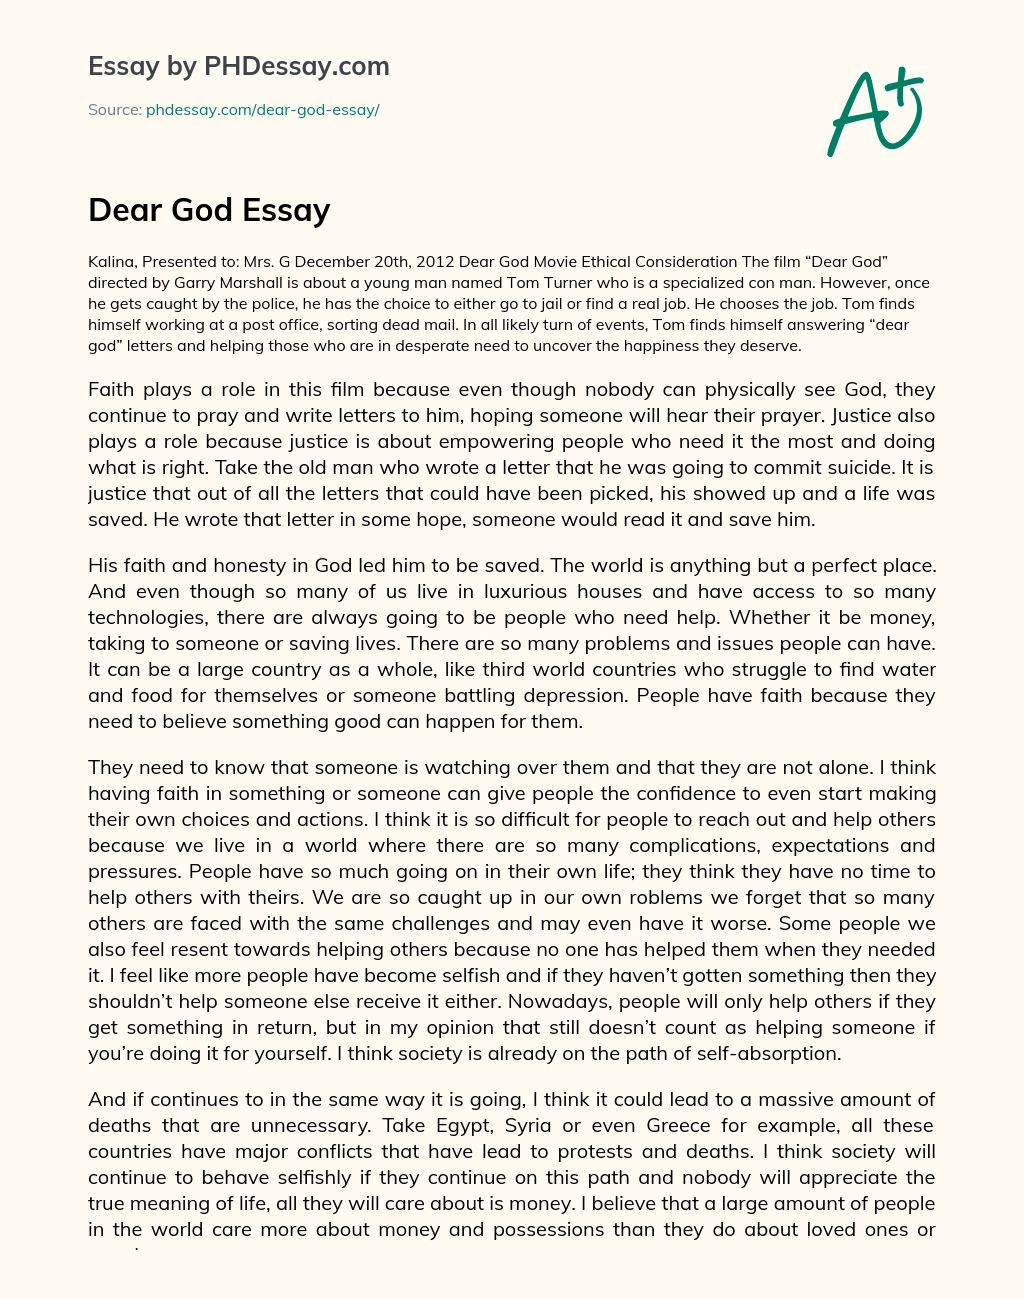 Dear God Essay essay